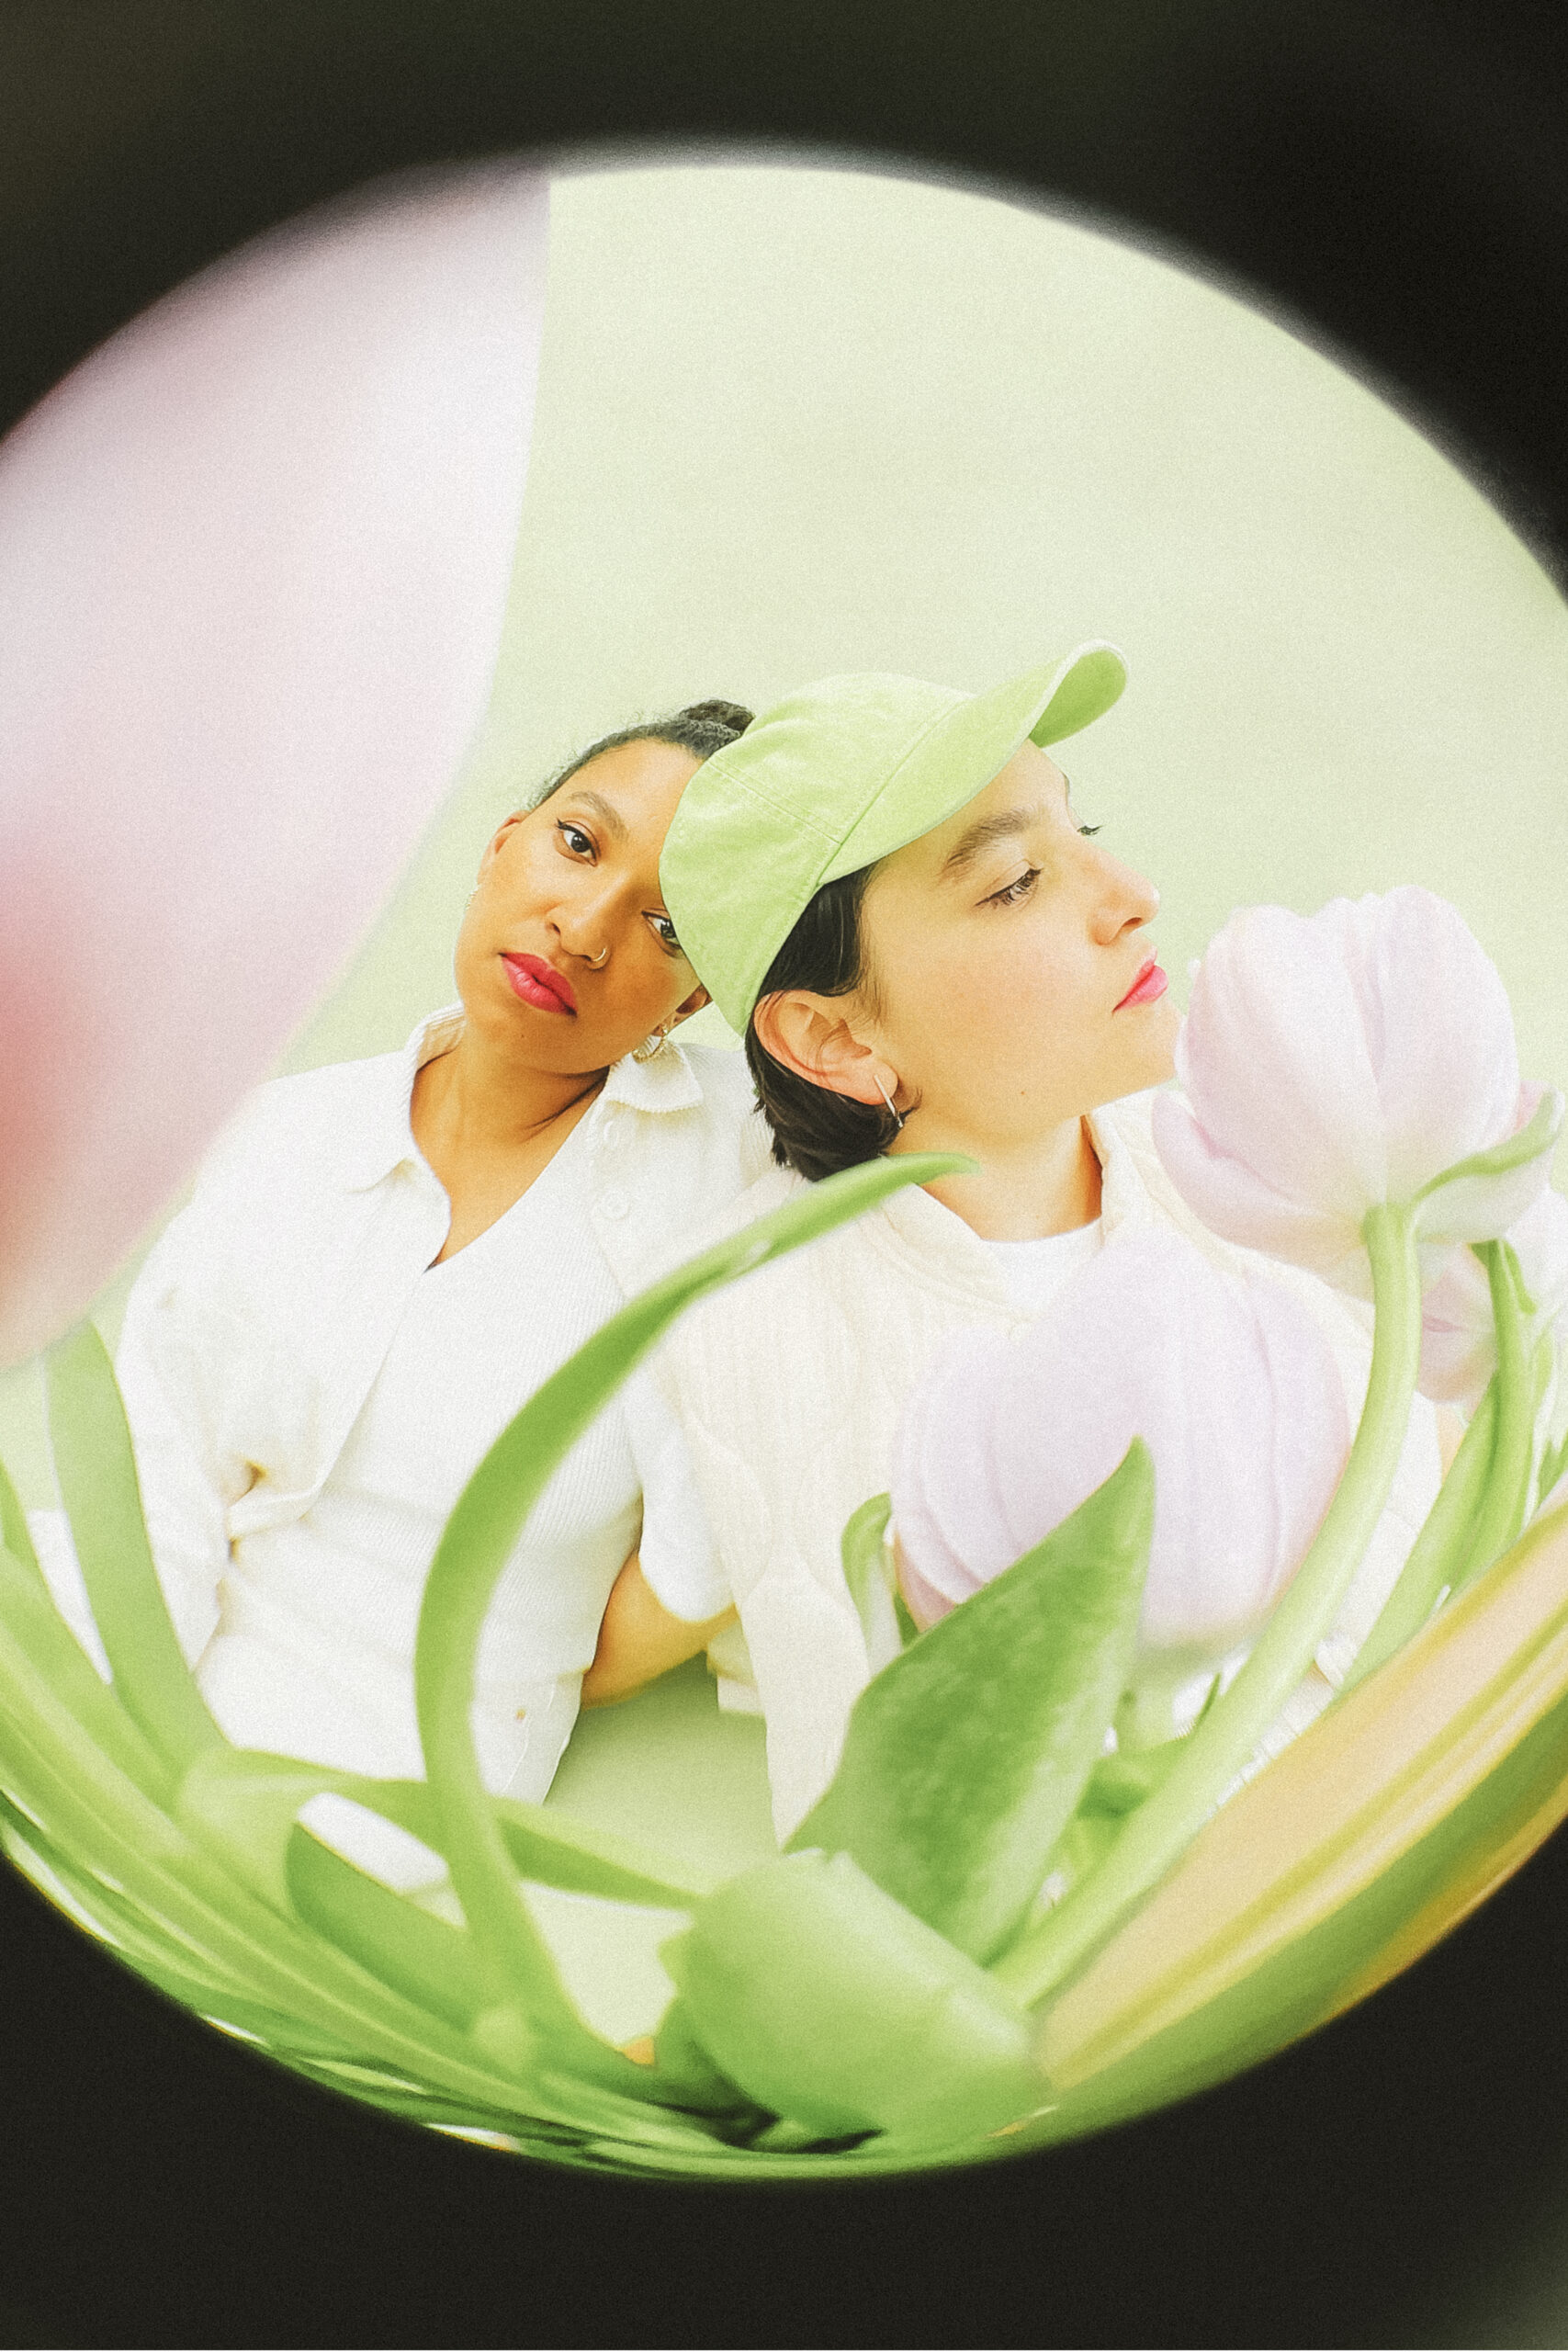 Zwei Frauen mit pinkem Lippenstift in einem hellgrünen Kreis mit Tulpen im Vordergrund